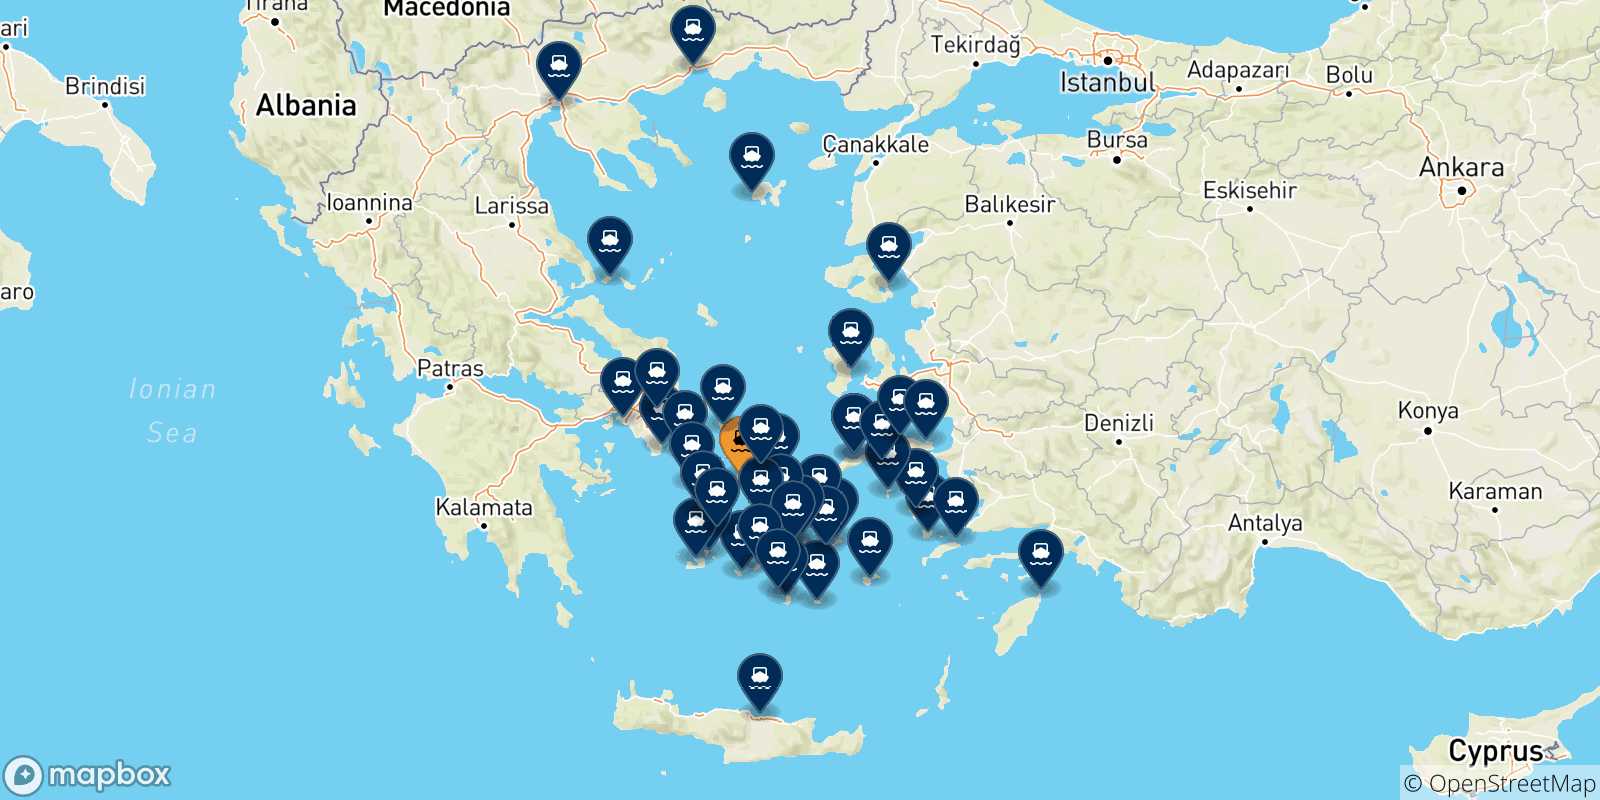 Mappa delle possibili rotte tra Syros e la Grecia